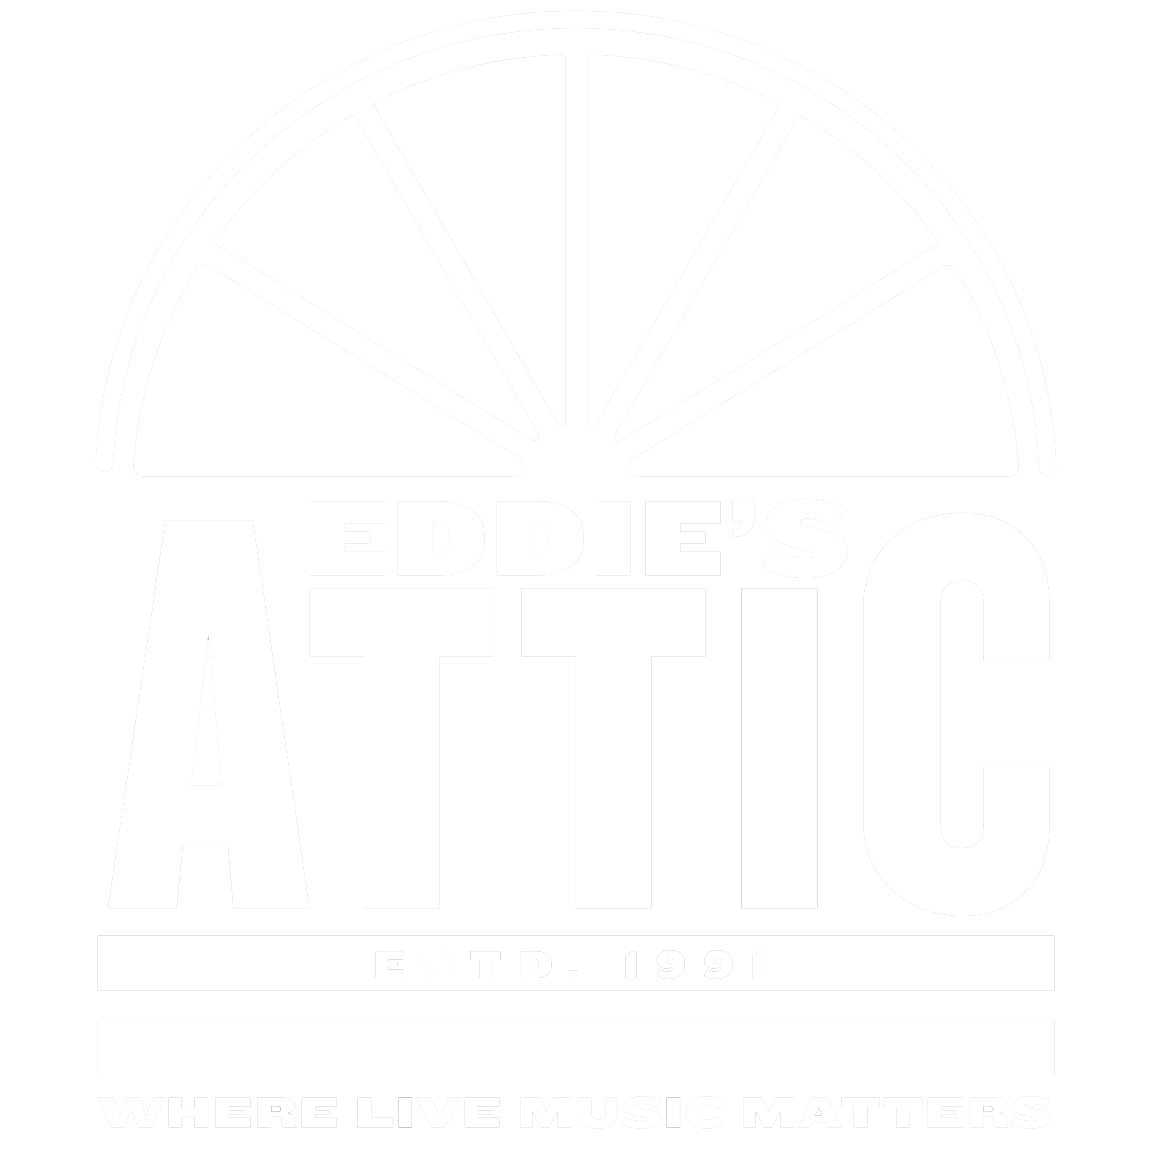 Eddie's Attic